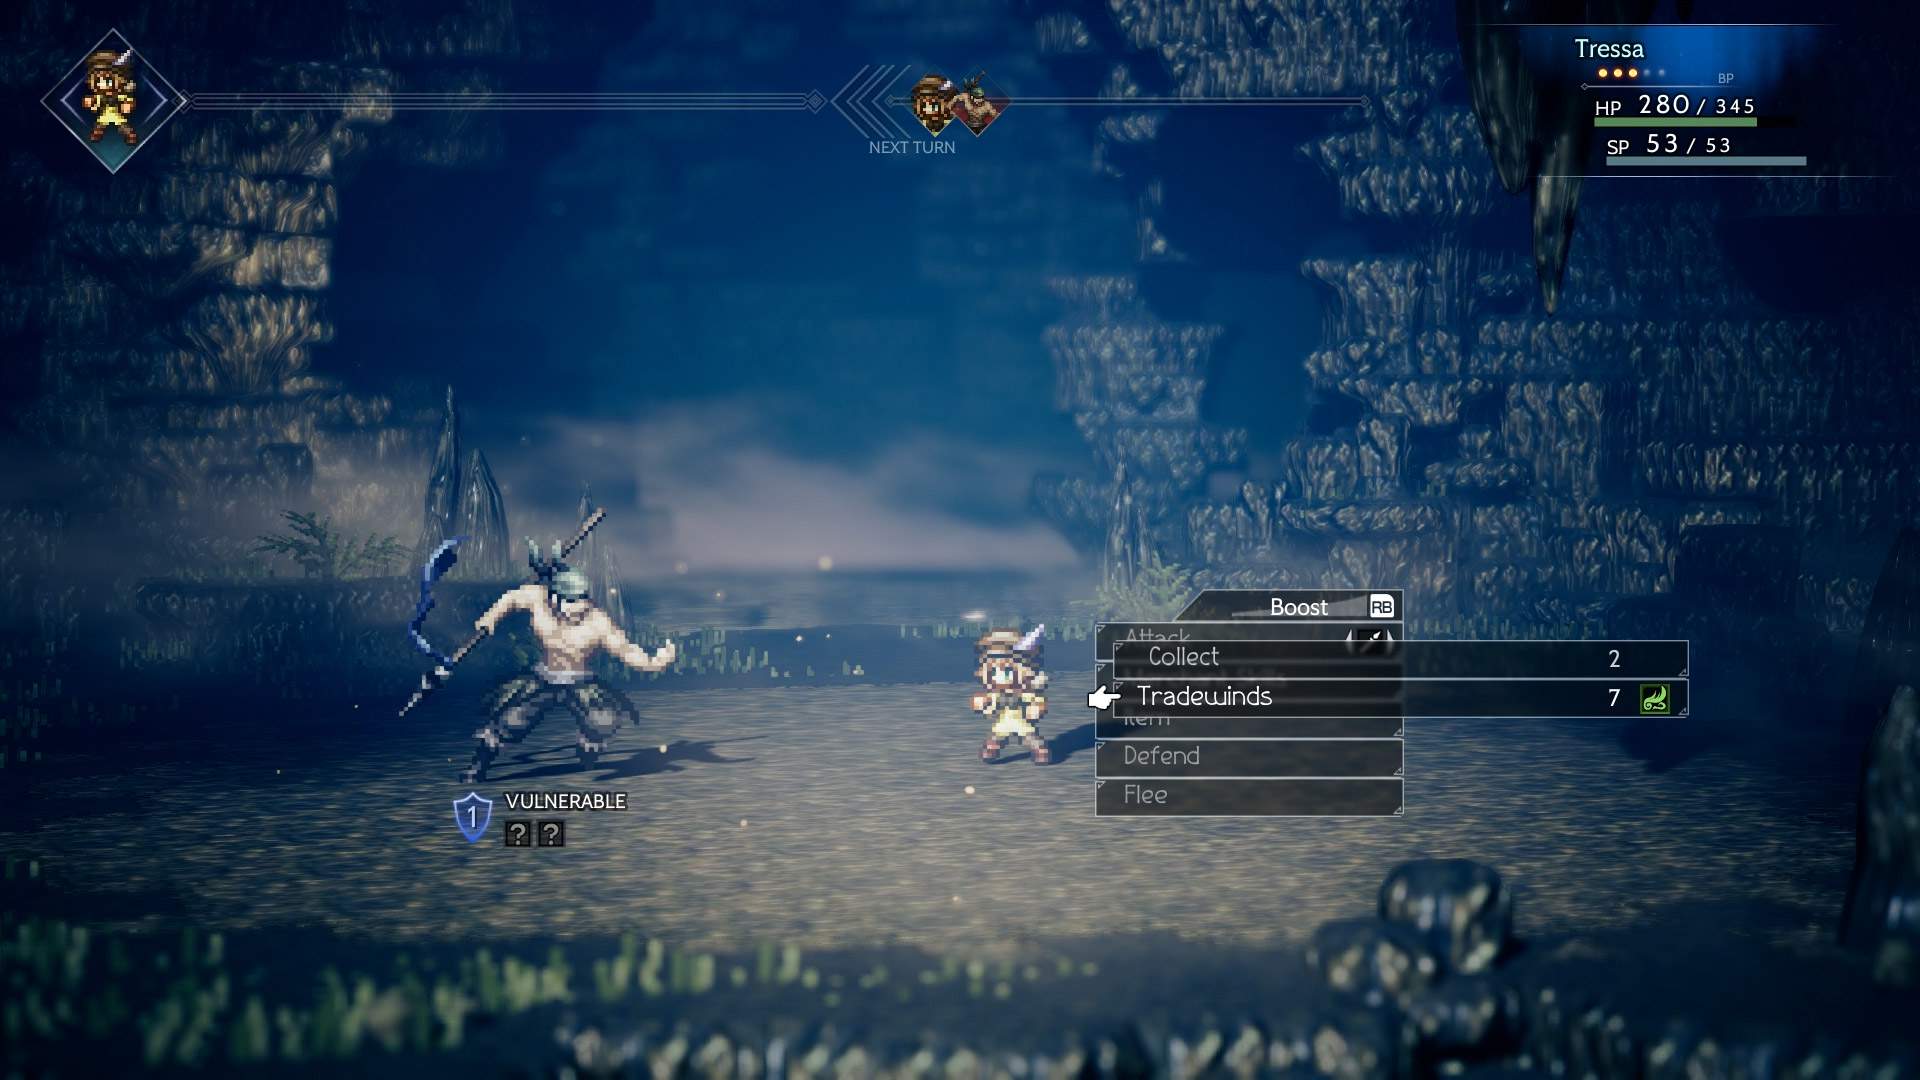 Captura de pantalla de una lucha del juego que muestra a Tressa en un combate por turnos contra un enemigo en una mazmorra oscura.